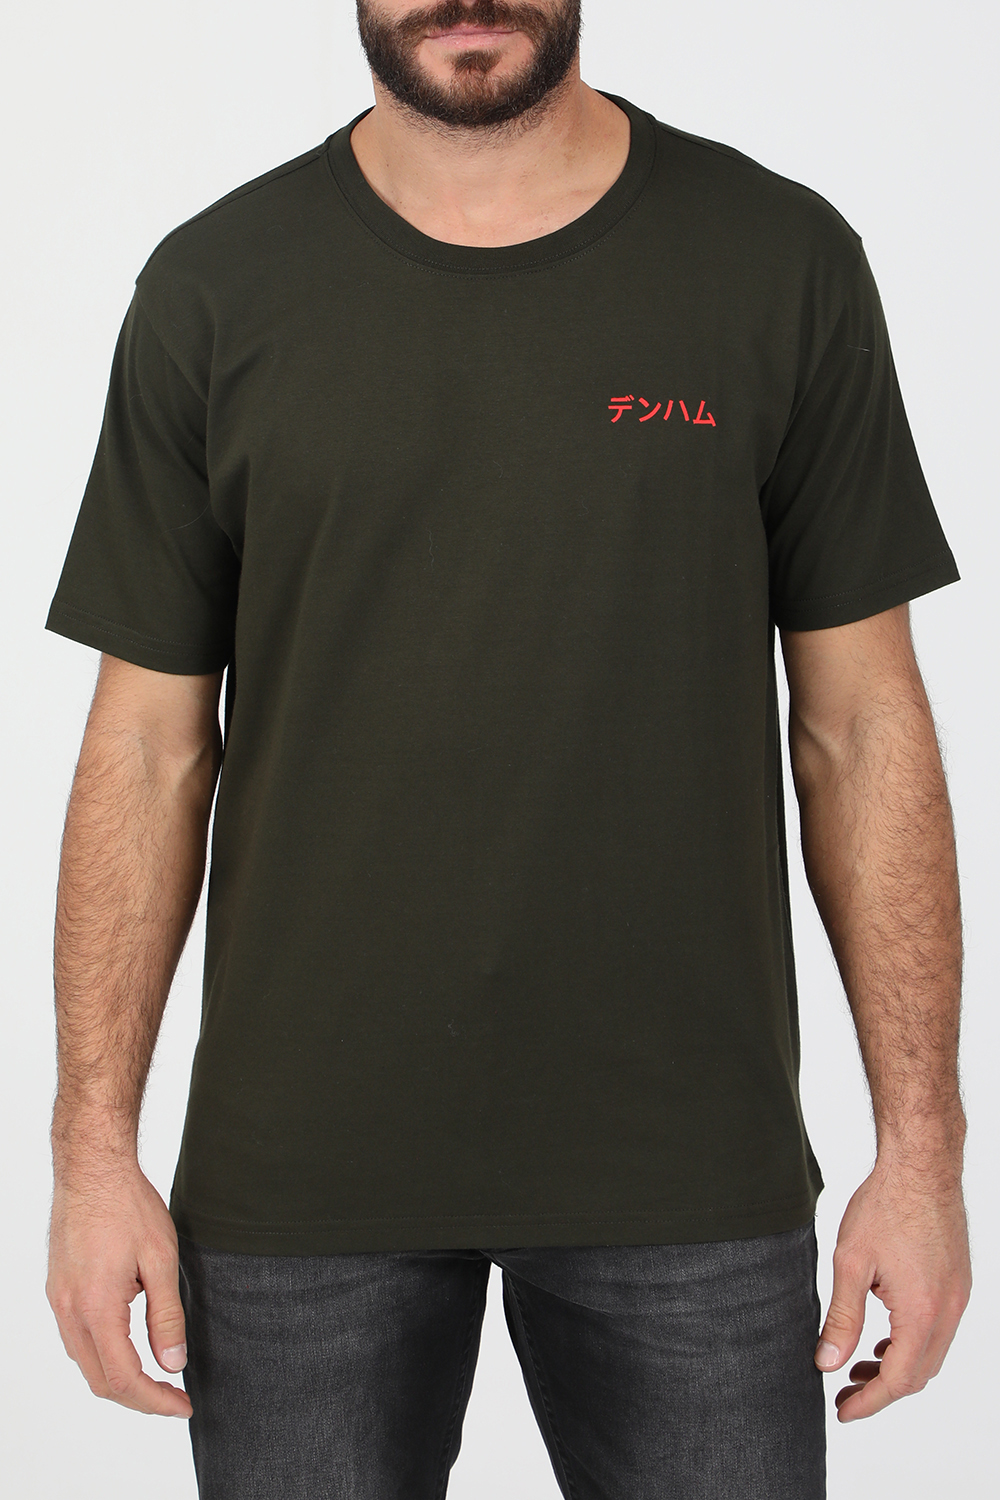 DENHAM – Ανδρικό t-shirt DENHAM SNAKE REG μαύρο 1823103.0-0101